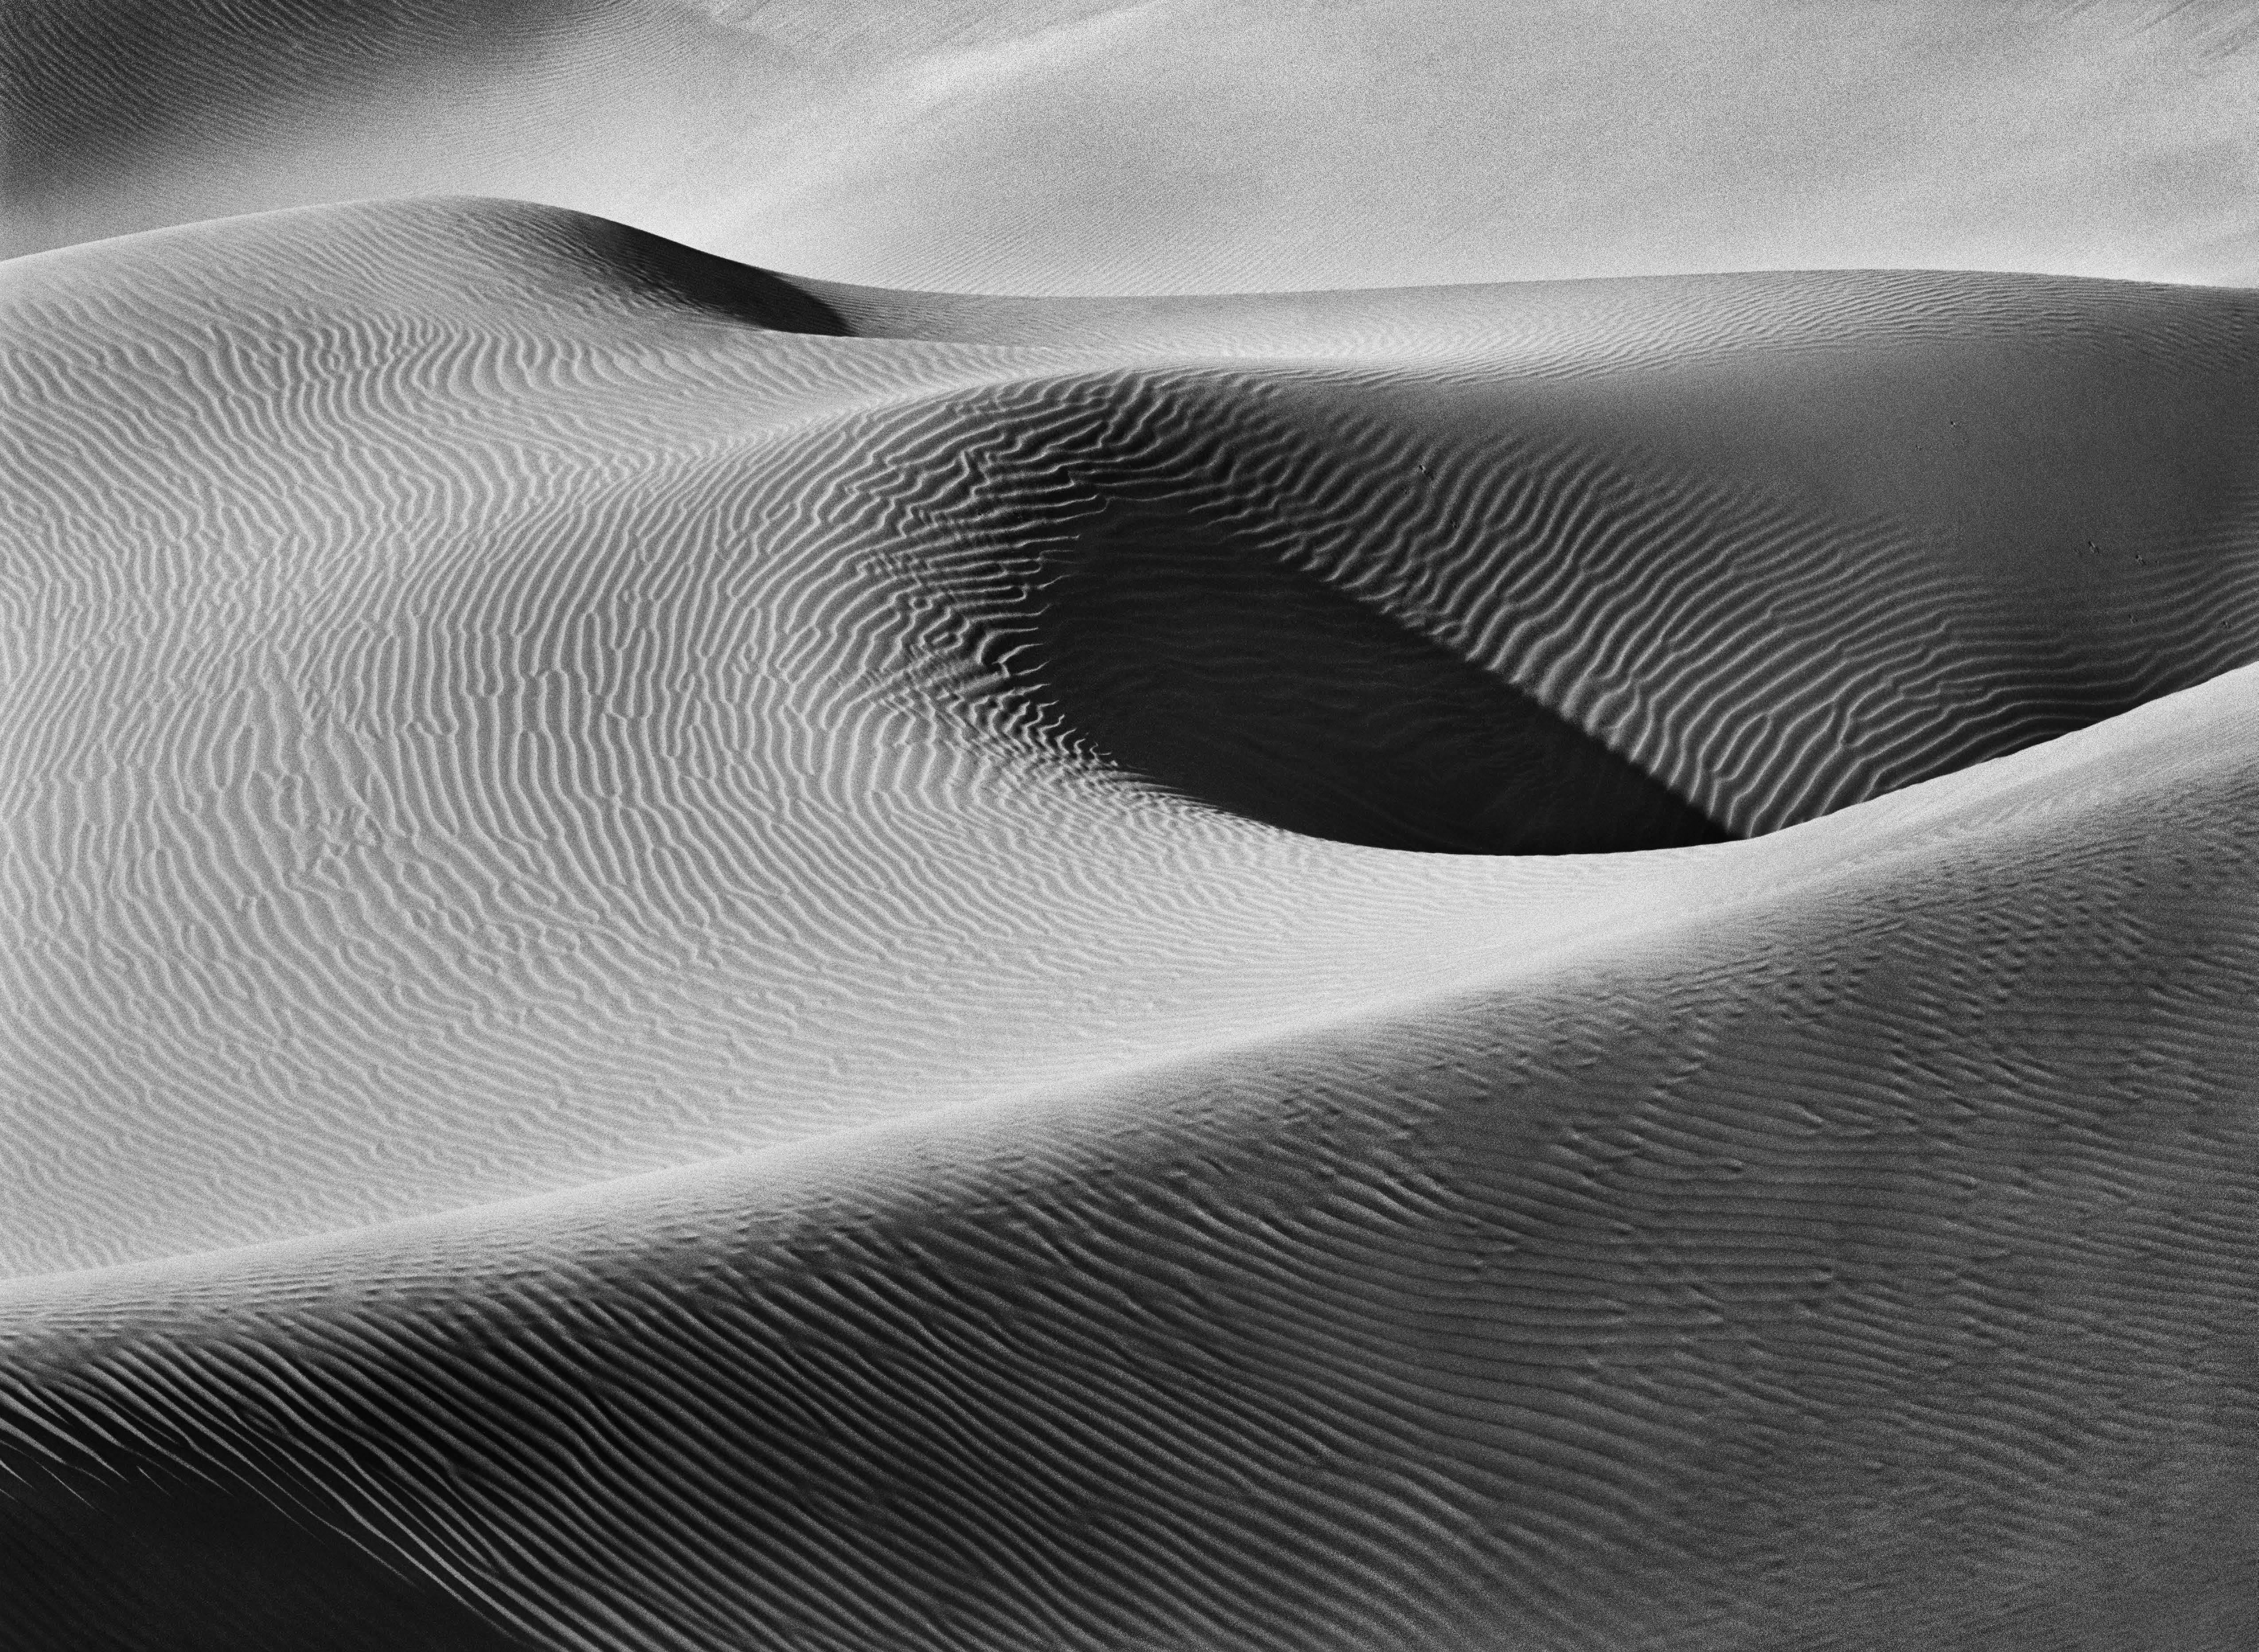 Песчаные дюны, национальный парк Намиб-Науклуфт, Намибия, 2005. Автор Себастьян Сальгадо